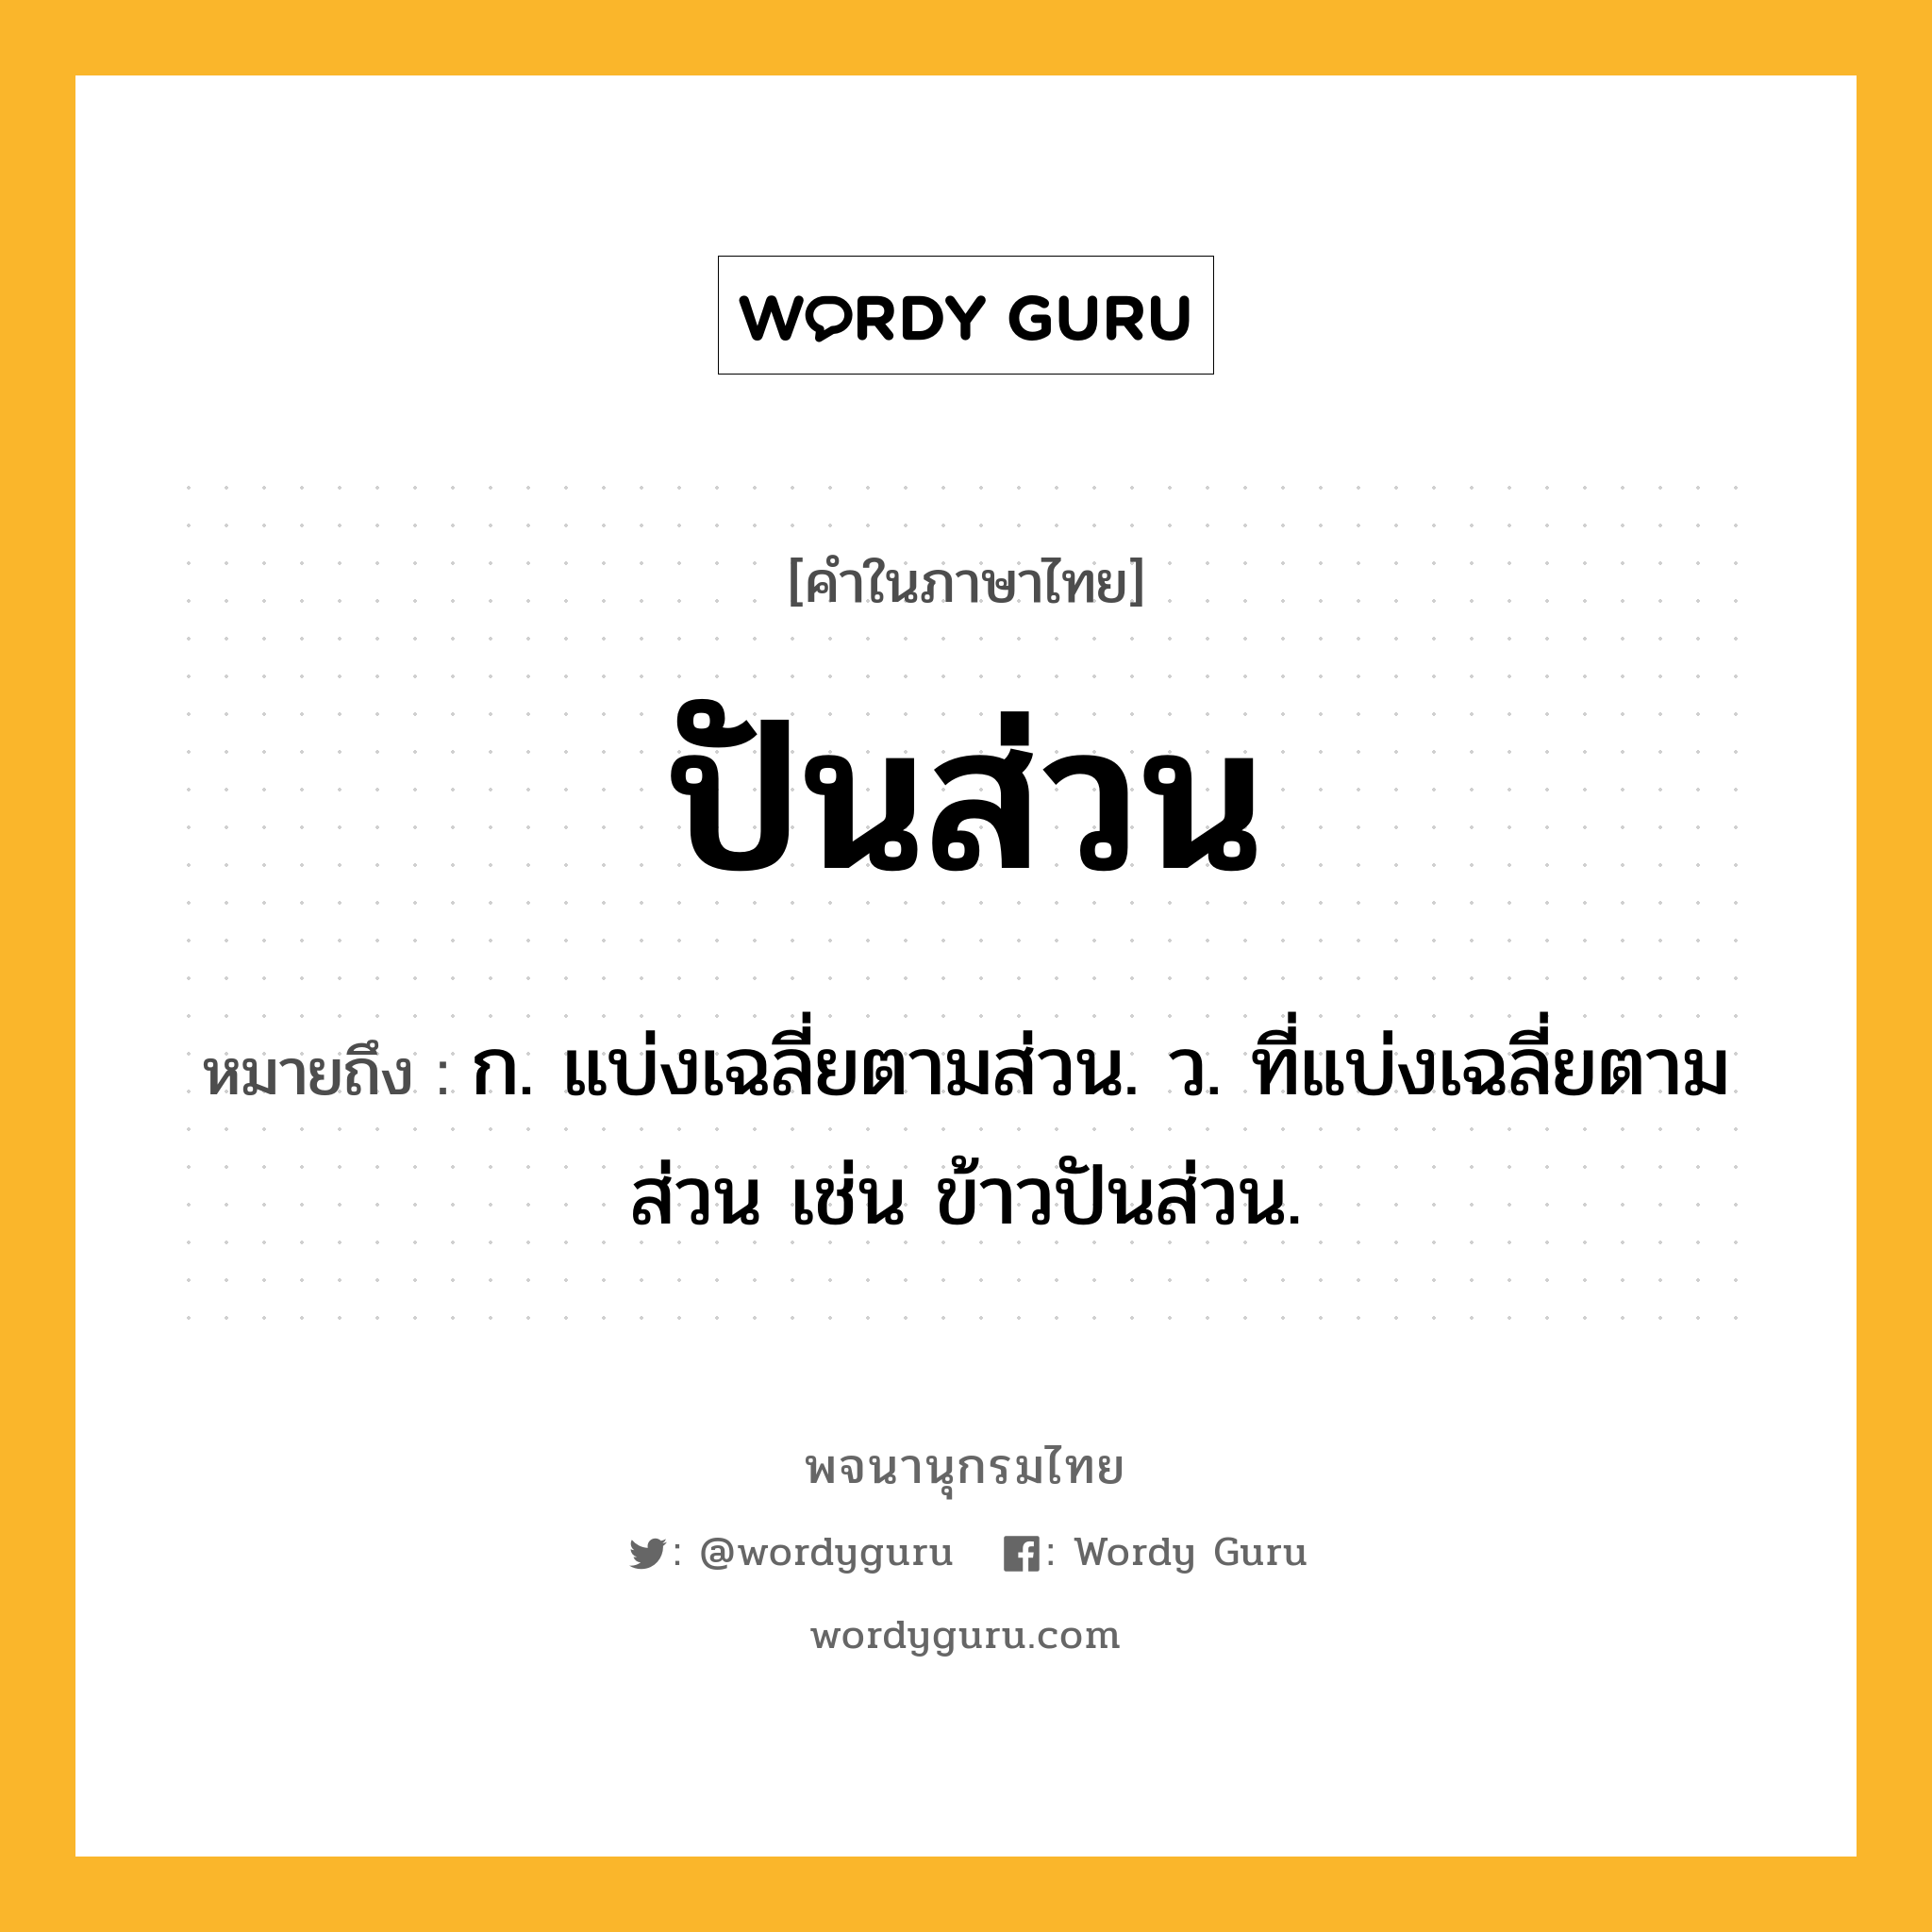 ปันส่วน หมายถึงอะไร?, คำในภาษาไทย ปันส่วน หมายถึง ก. แบ่งเฉลี่ยตามส่วน. ว. ที่แบ่งเฉลี่ยตามส่วน เช่น ข้าวปันส่วน.